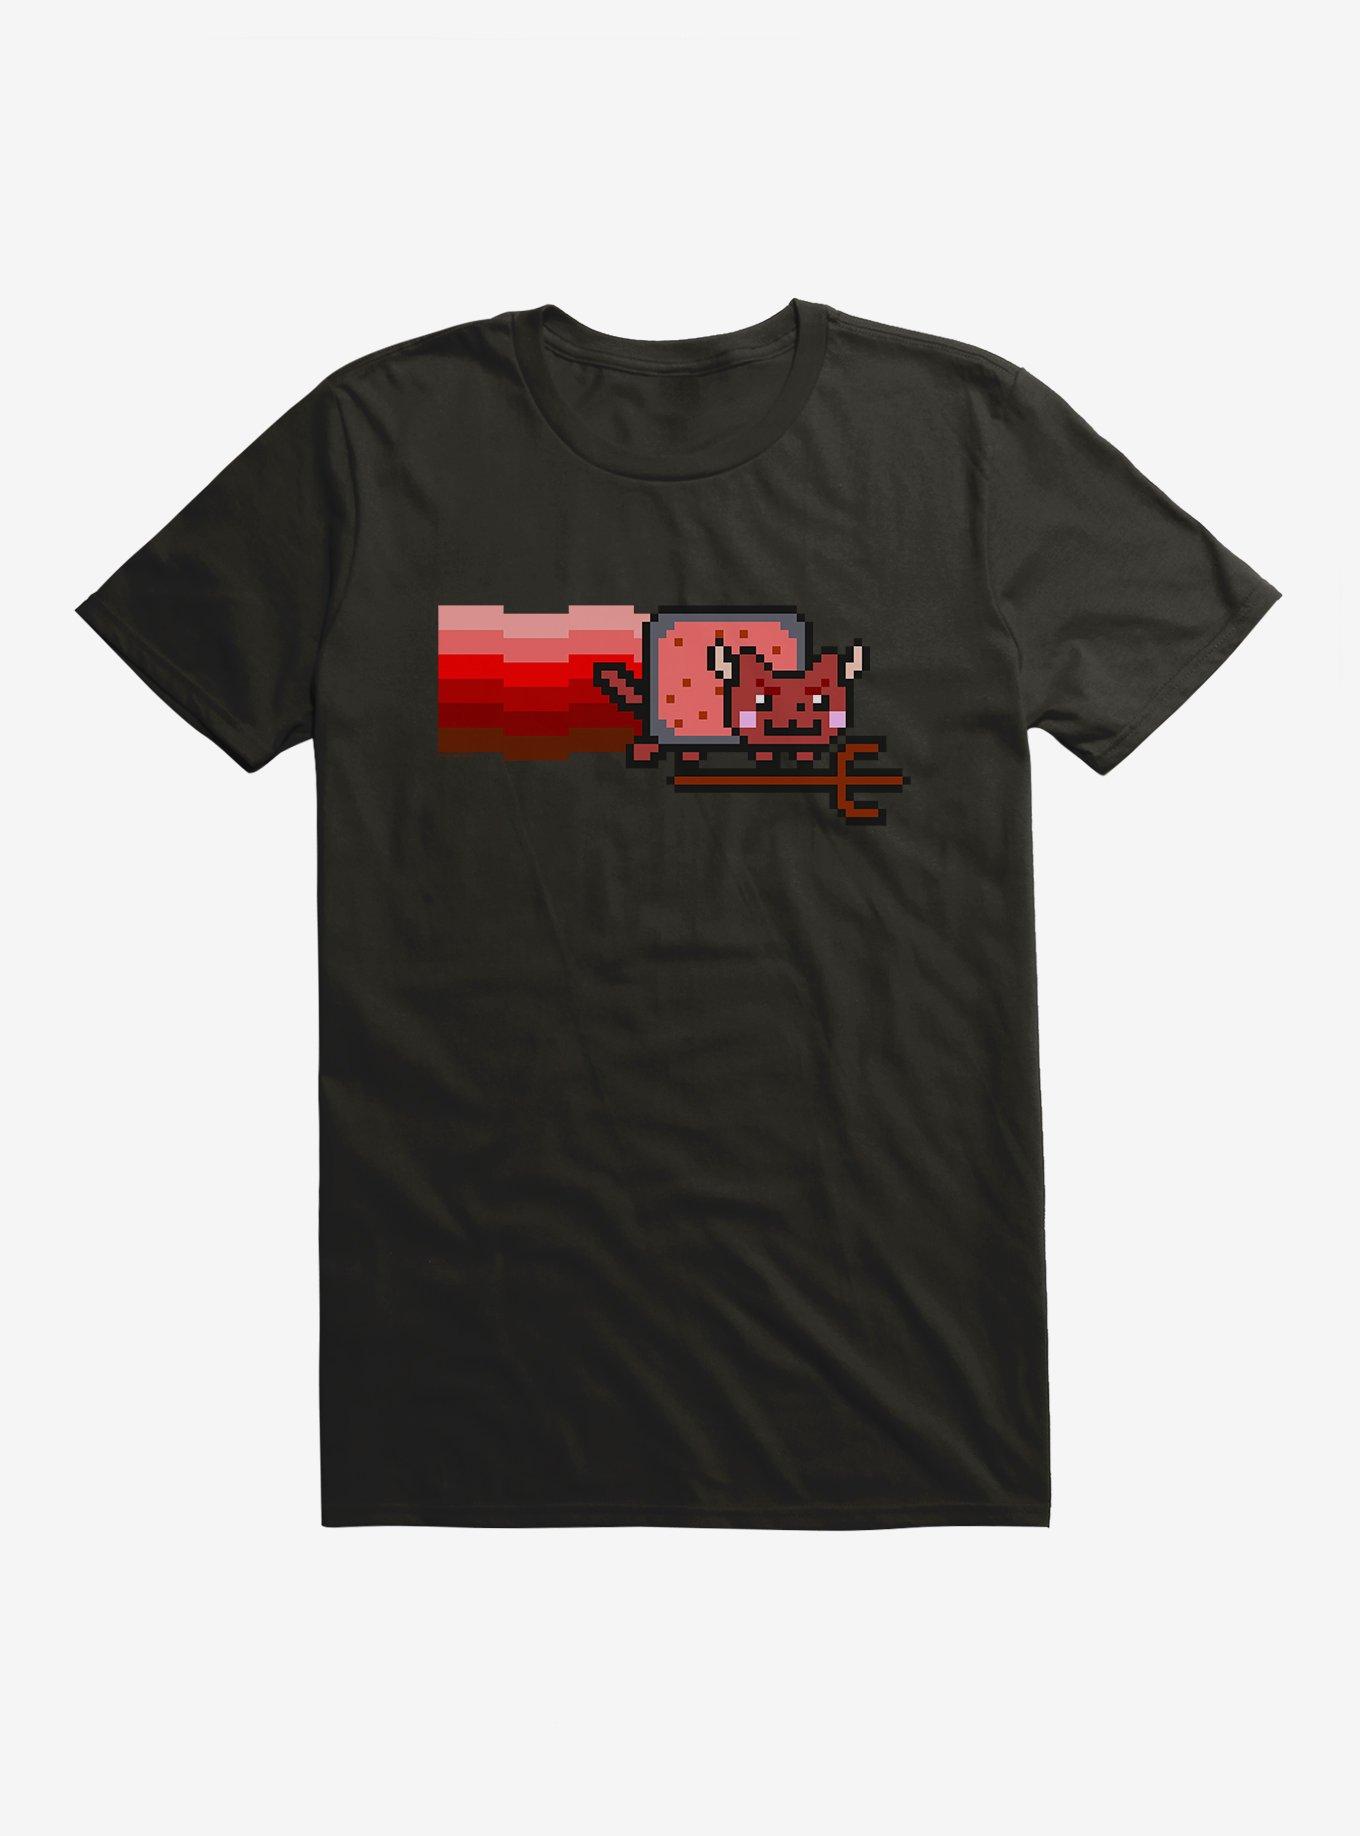 Nyan Cat Demon T-Shirt